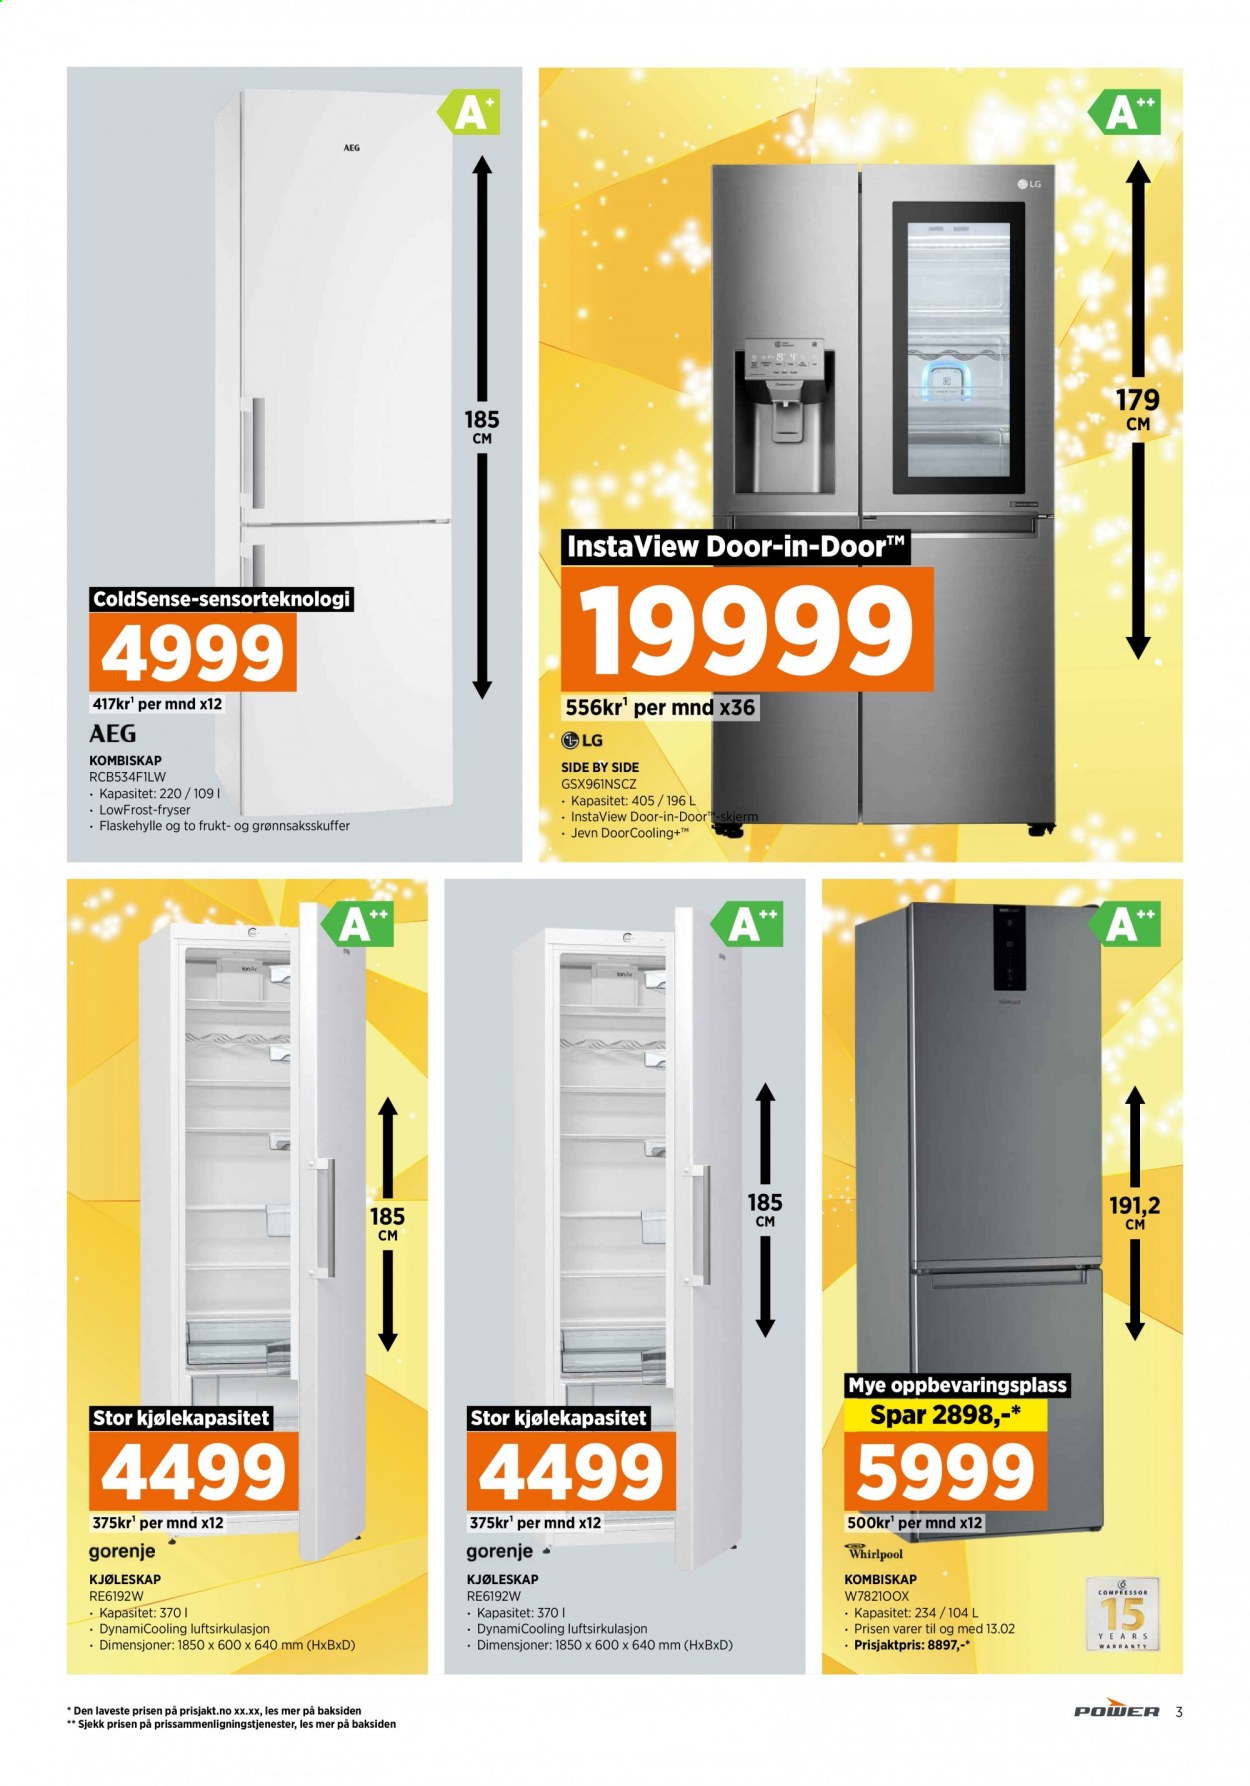 thumbnail - Kundeavis Power - 25.1.2021 - 31.1.2021 - Produkter fra tilbudsaviser - LG, kjøleskap, kombiskap. Side 3.